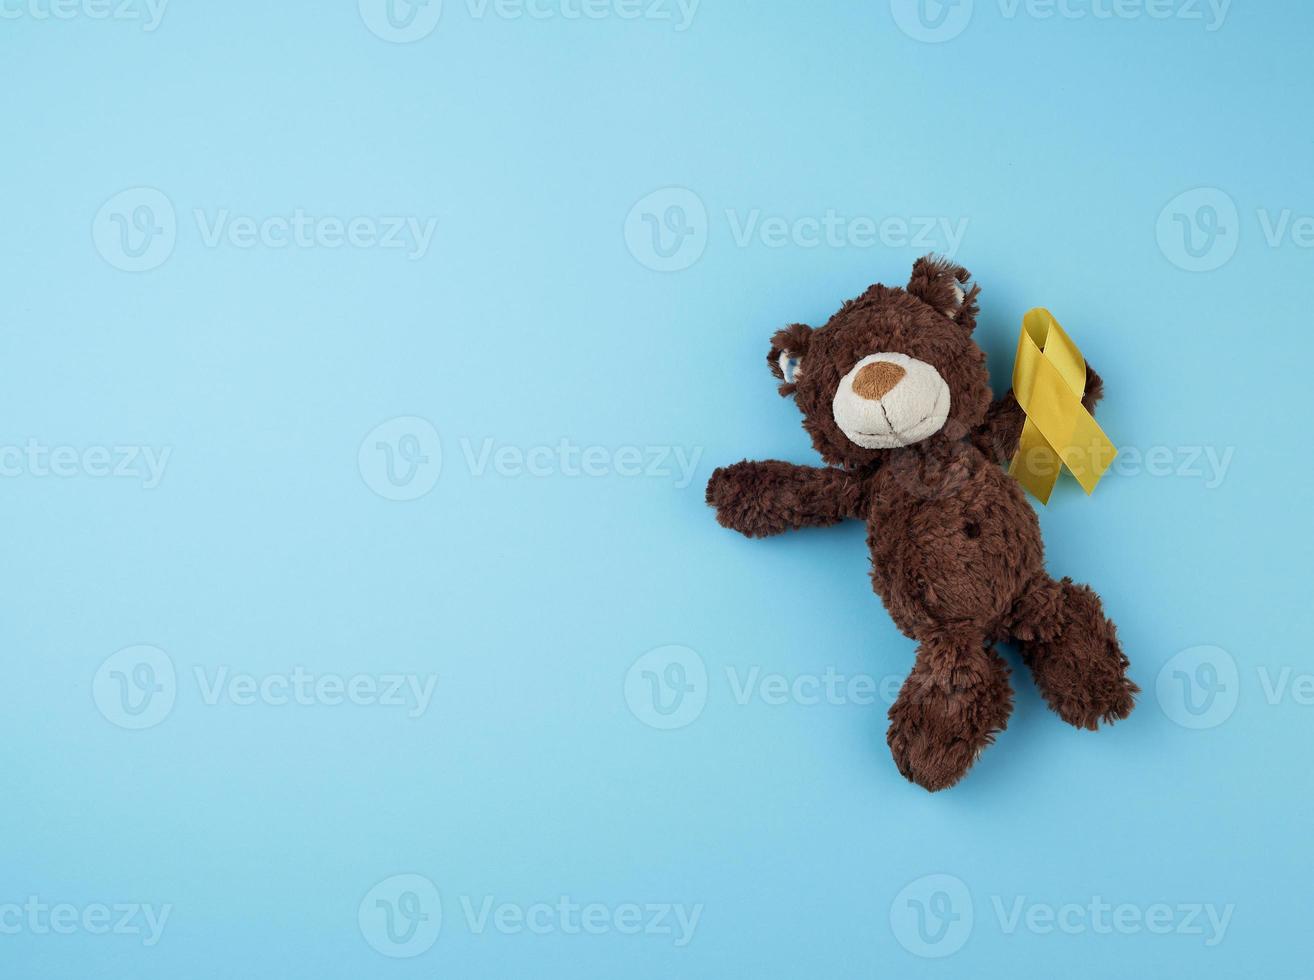 petit ours en peluche marron tient dans sa patte un ruban jaune plié en boucle photo